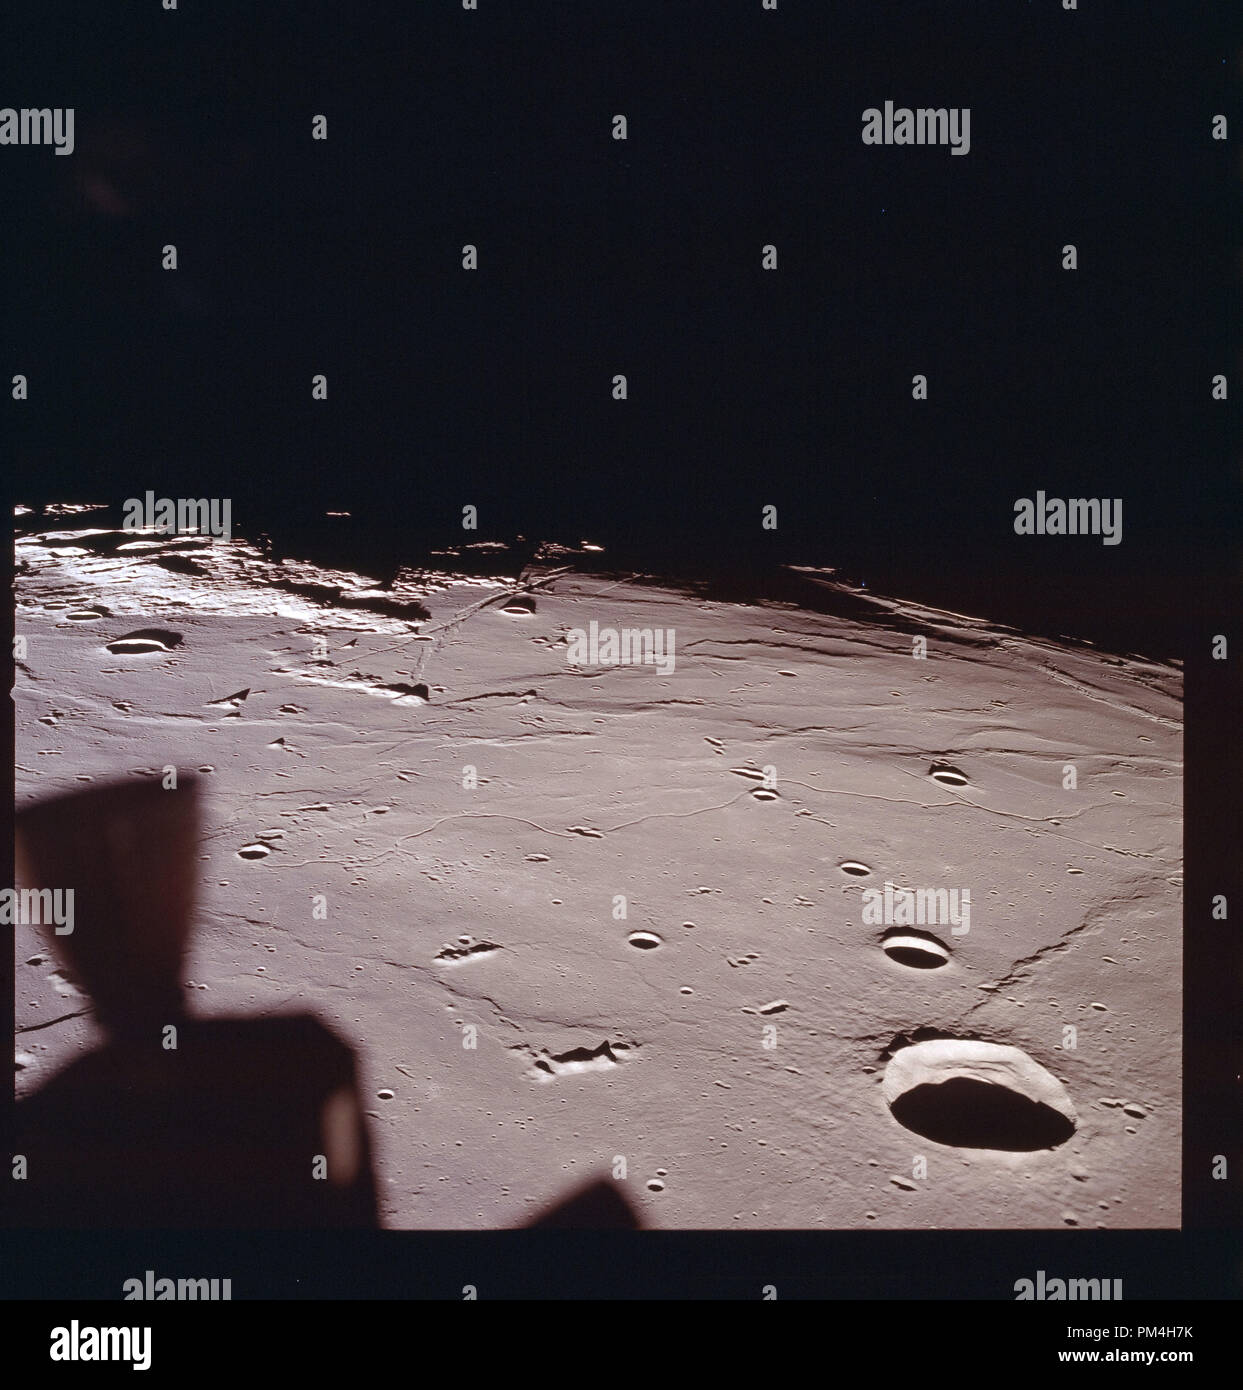 Apollo 11 Auf dem Mond während der Juli 1969 Geschichte Die Reise auf den Mond und die anschließende Mondlandung. Datei Referenz Nr. 1003 242 THA Stockfoto